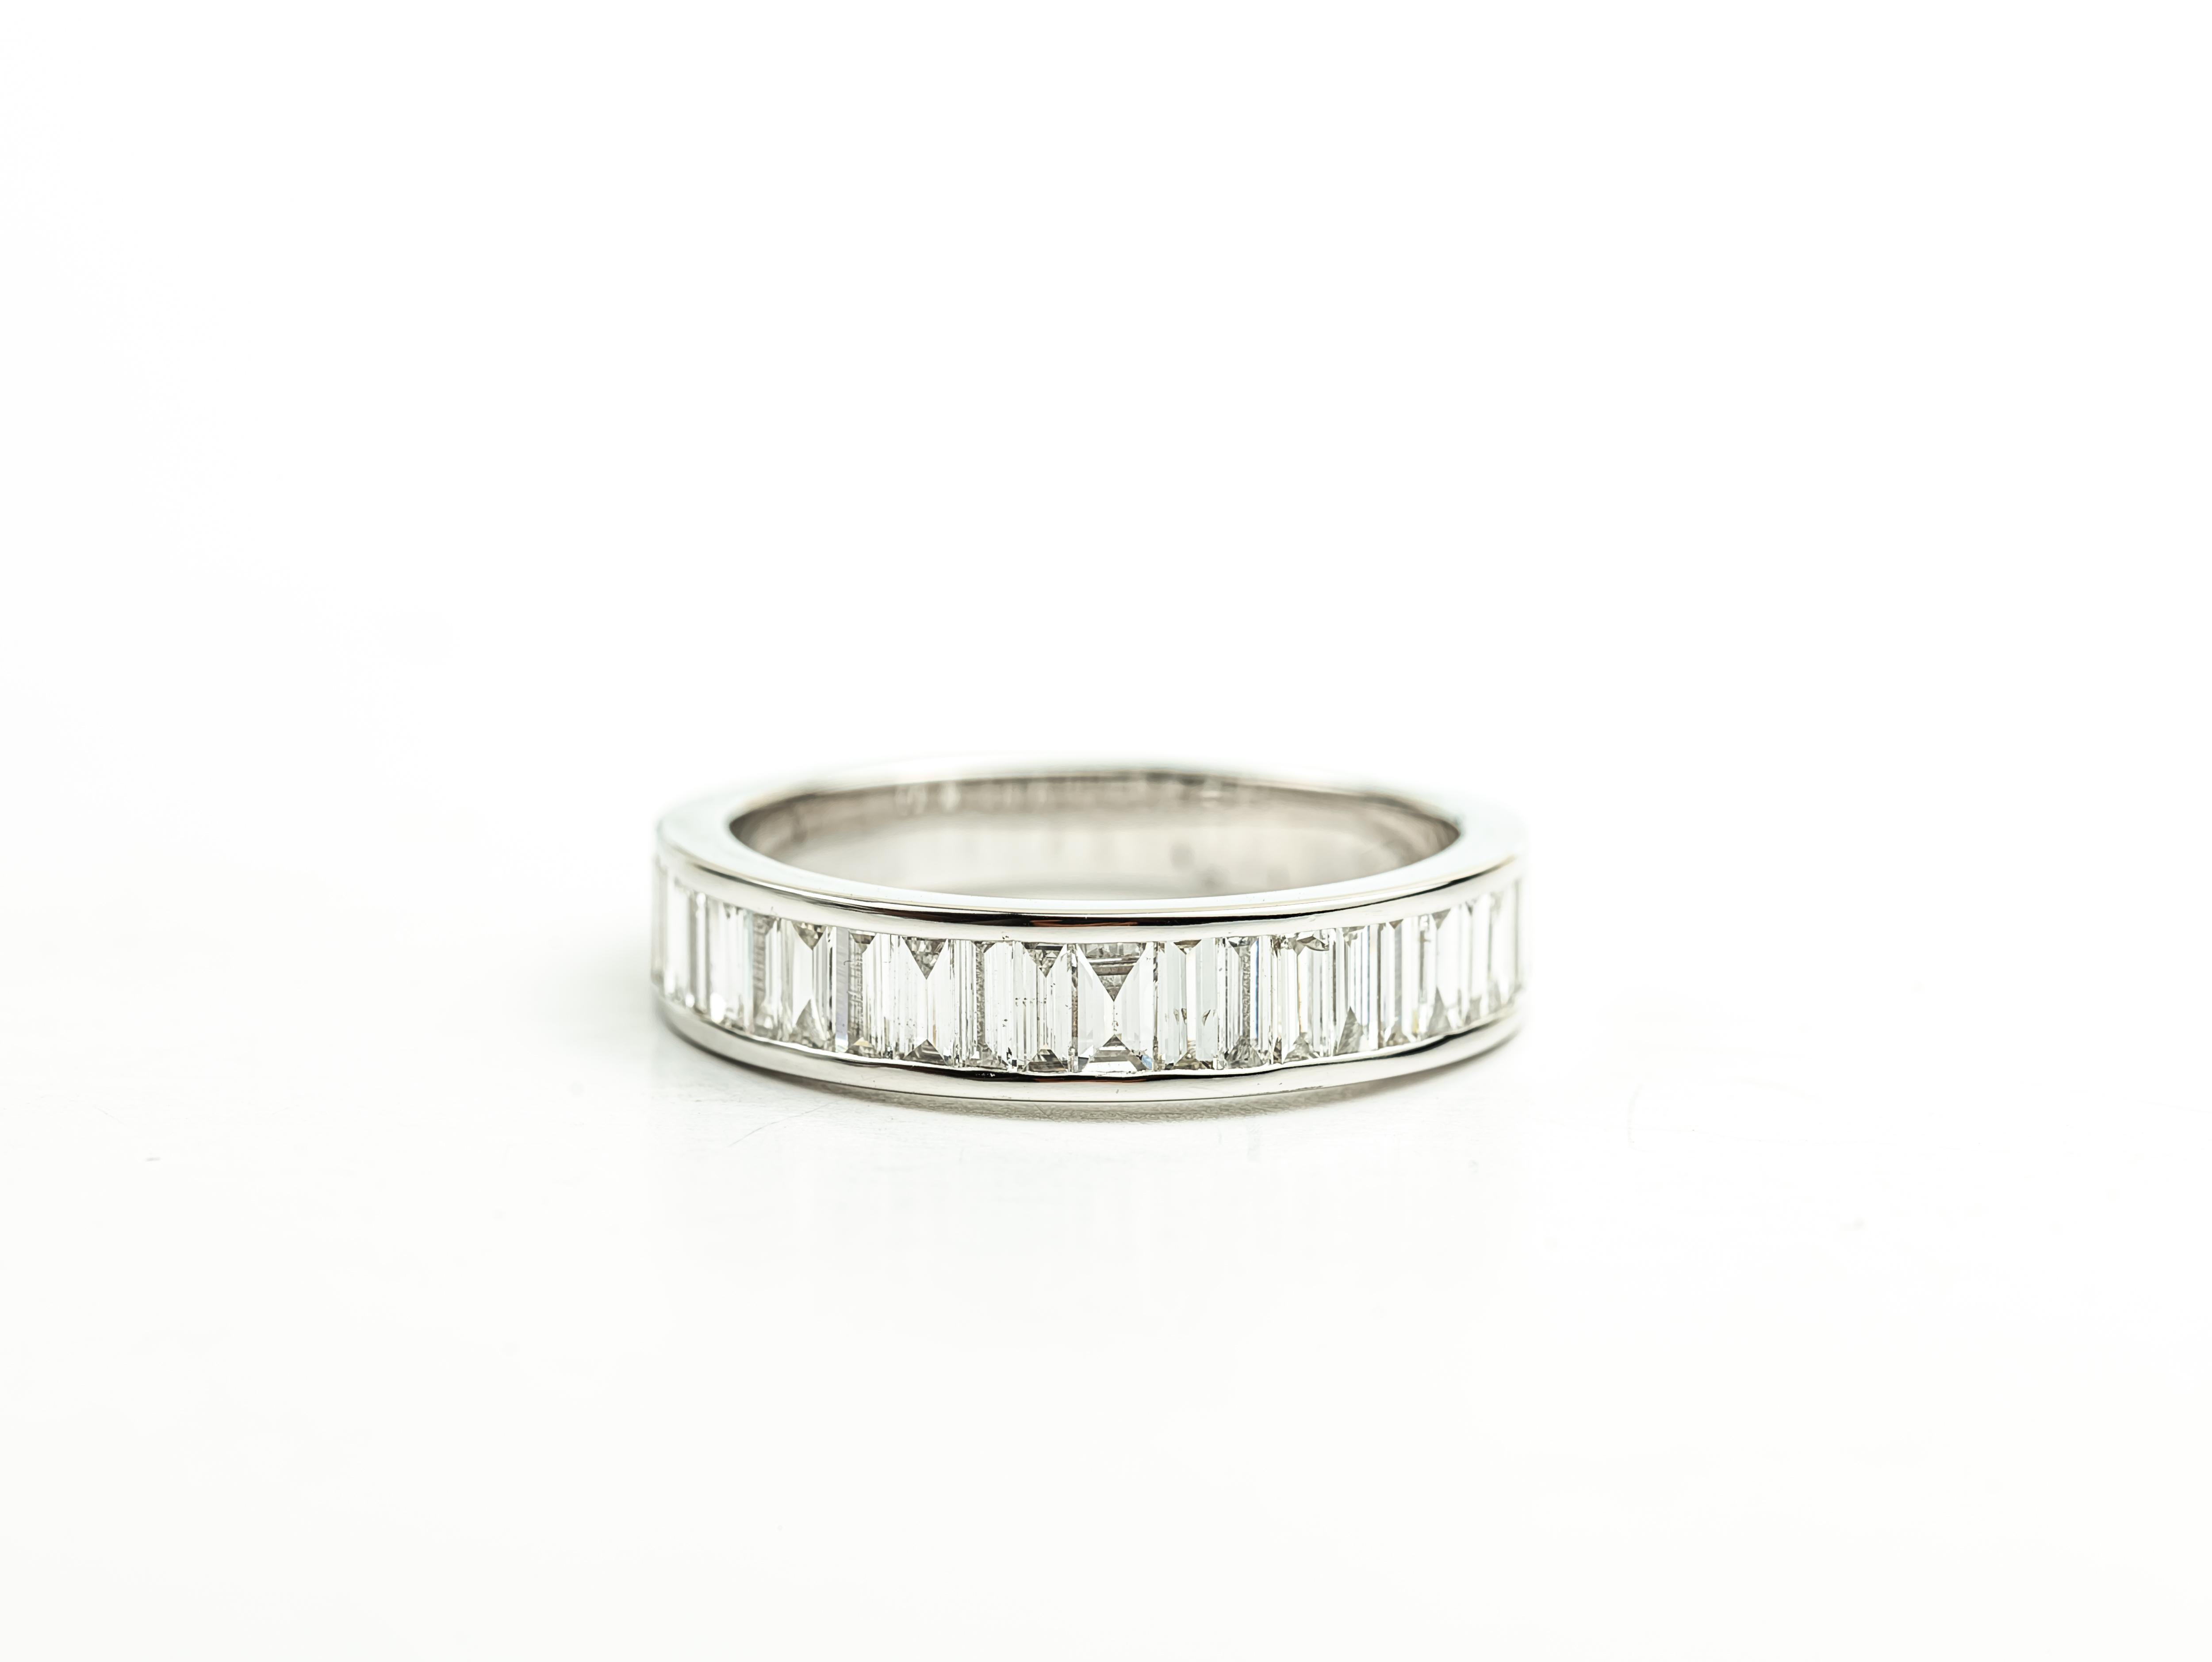 Art Deco Diamant Baguetteschliff Ring Illusion Einstellung, 1,1 TCW F G VS Diamant Ring


Erhältlich in 18 Karat Weißgold.

Das gleiche Design kann auch mit anderen Edelsteinen auf Anfrage hergestellt werden.

Einzelheiten zum Produkt:

- Massiv